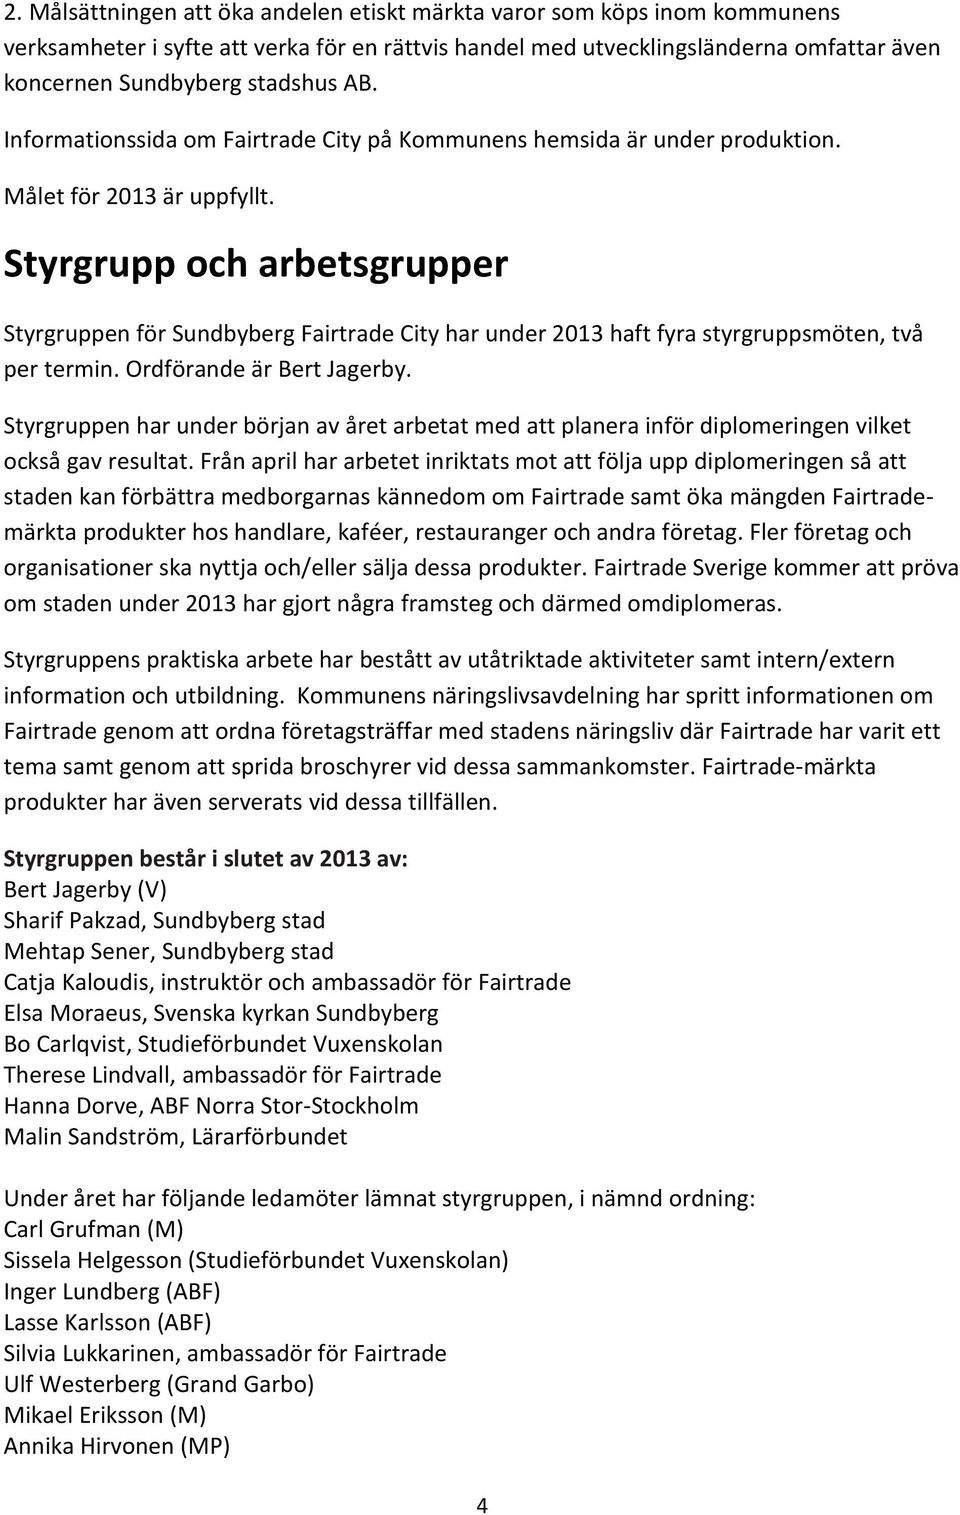 Styrgrupp och arbetsgrupper Styrgruppen för Sundbyberg Fairtrade City har under 2013 haft fyra styrgruppsmöten, två per termin. Ordförande är Bert Jagerby.